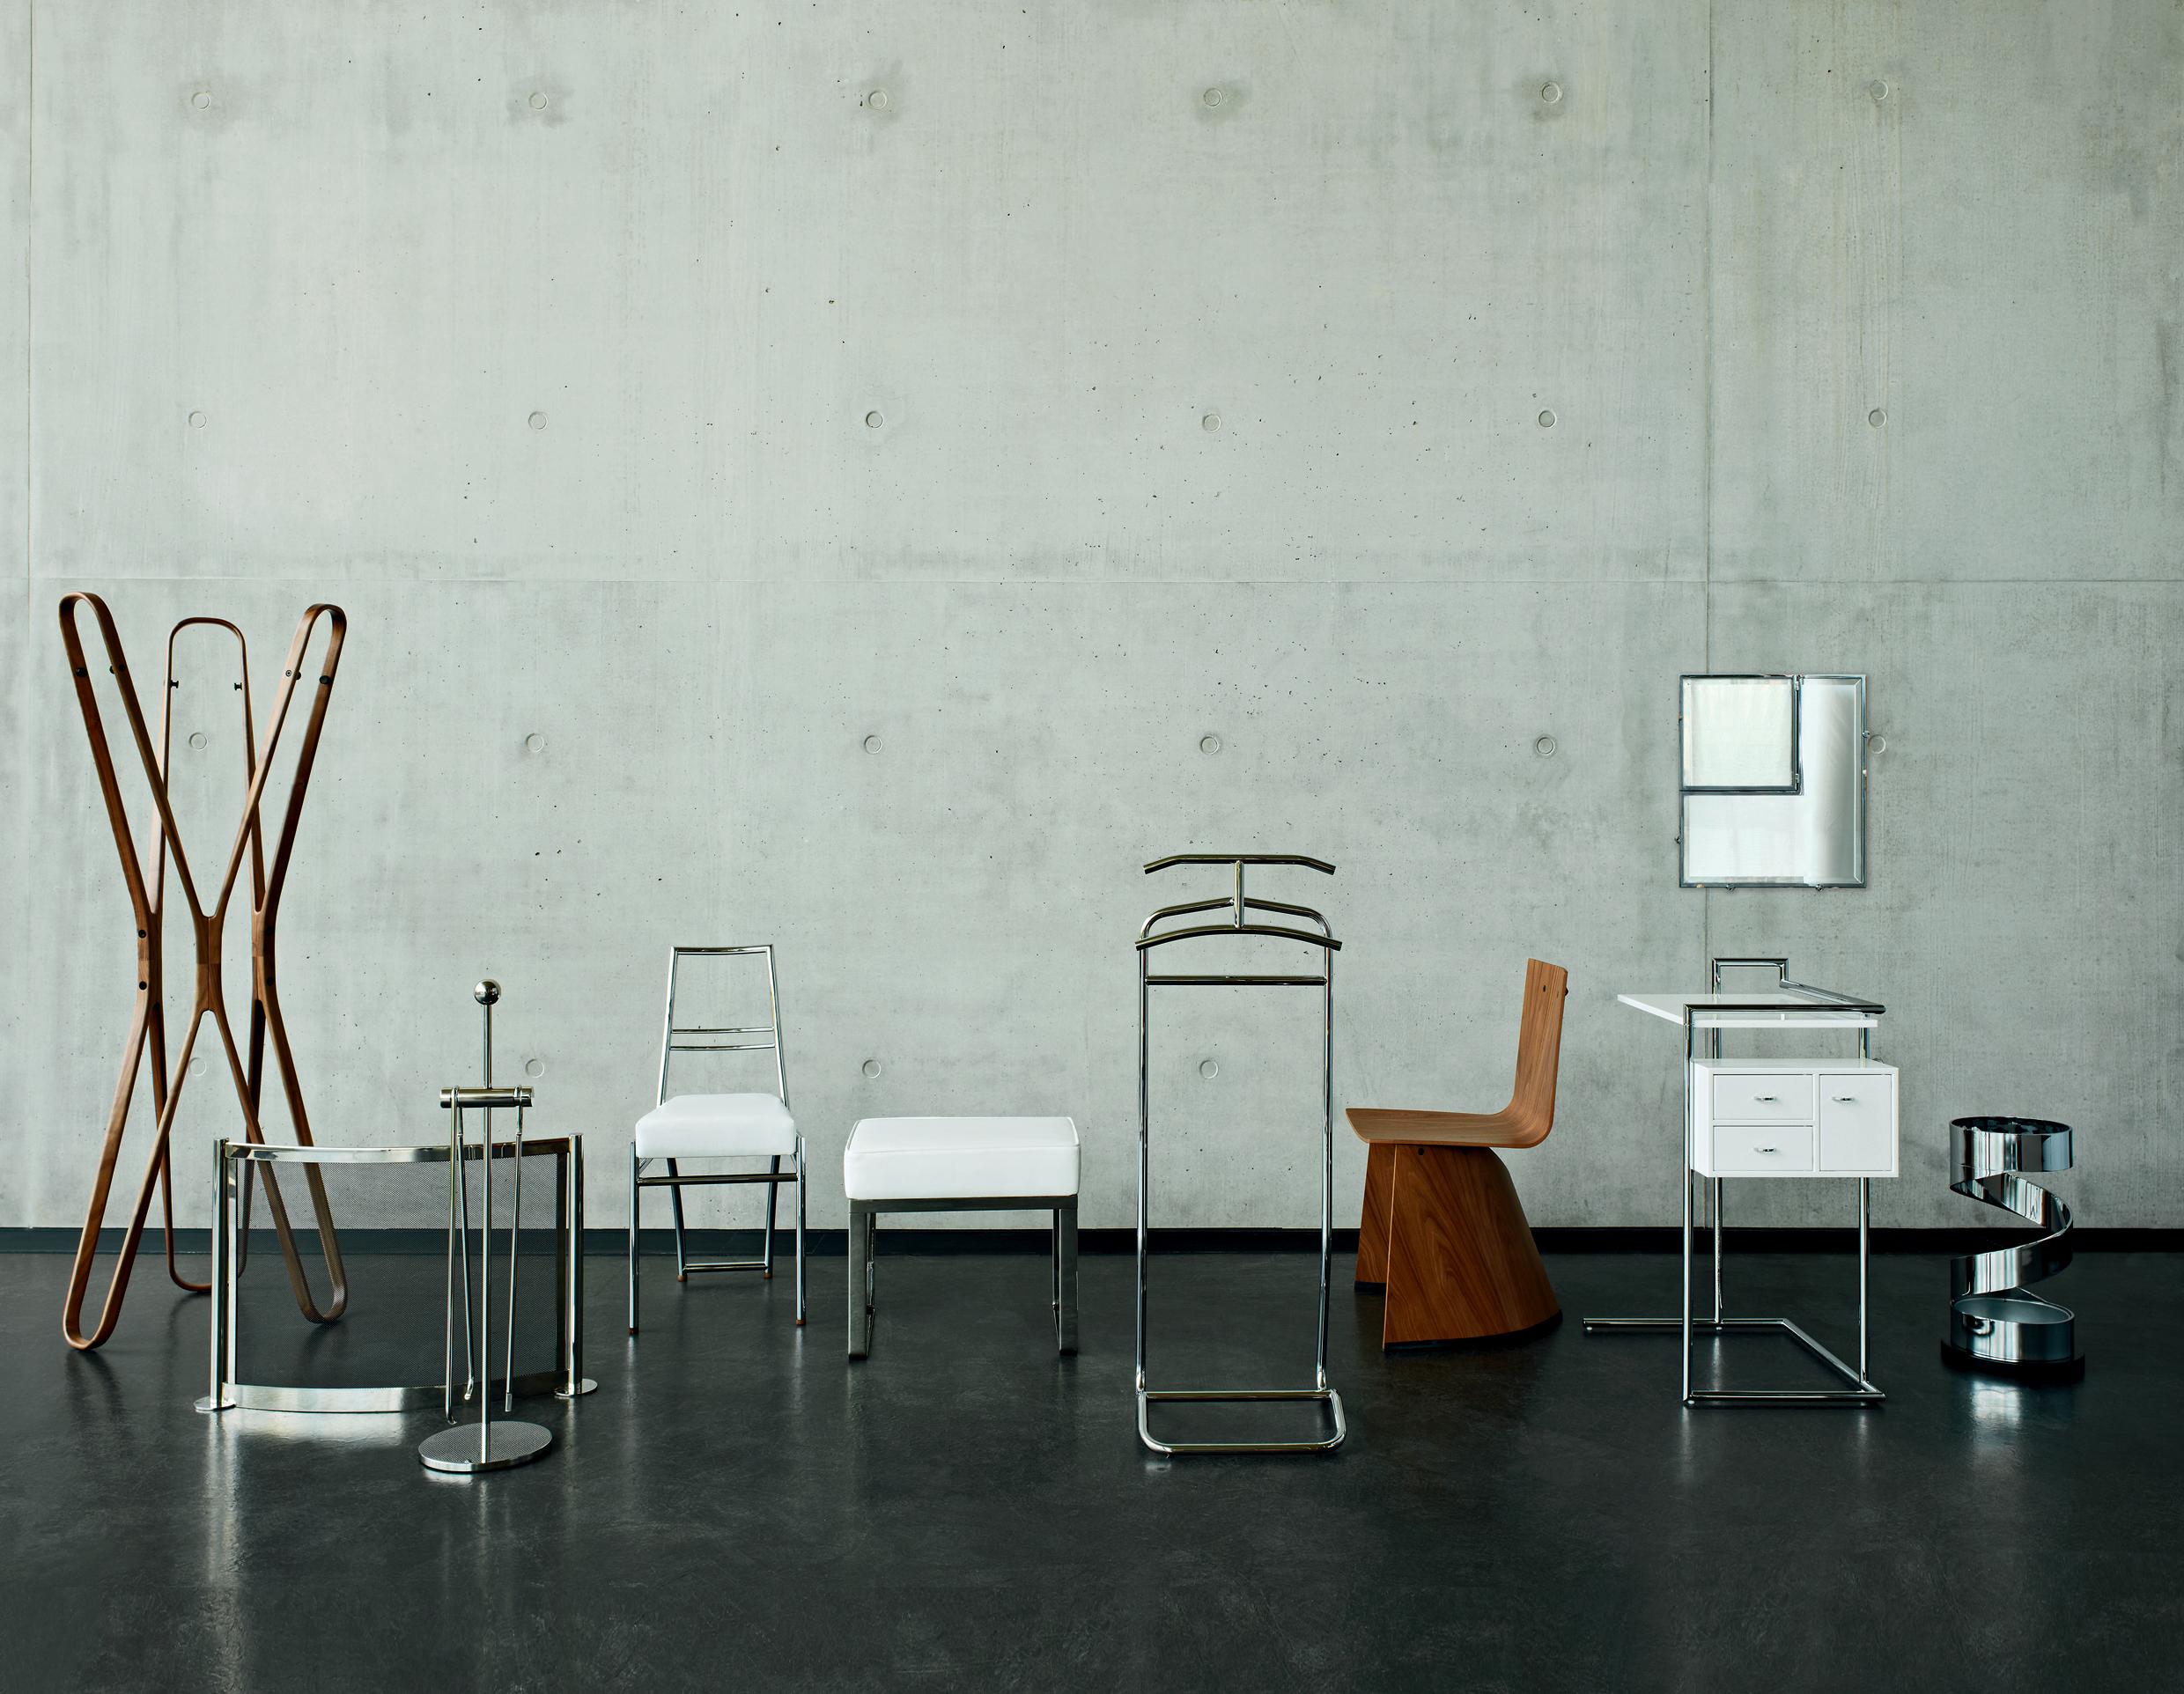 Für Konstantin Grcic war der Gedanke, die 1001. zahme Stuhlversion mit vier Beinen zu entwerfen, einfach zu langweilig. Stattdessen schuf er aus der intelligenten Kombination von zwei Holzschalen einen neuartigen Stuhl mit hoher skulpturaler